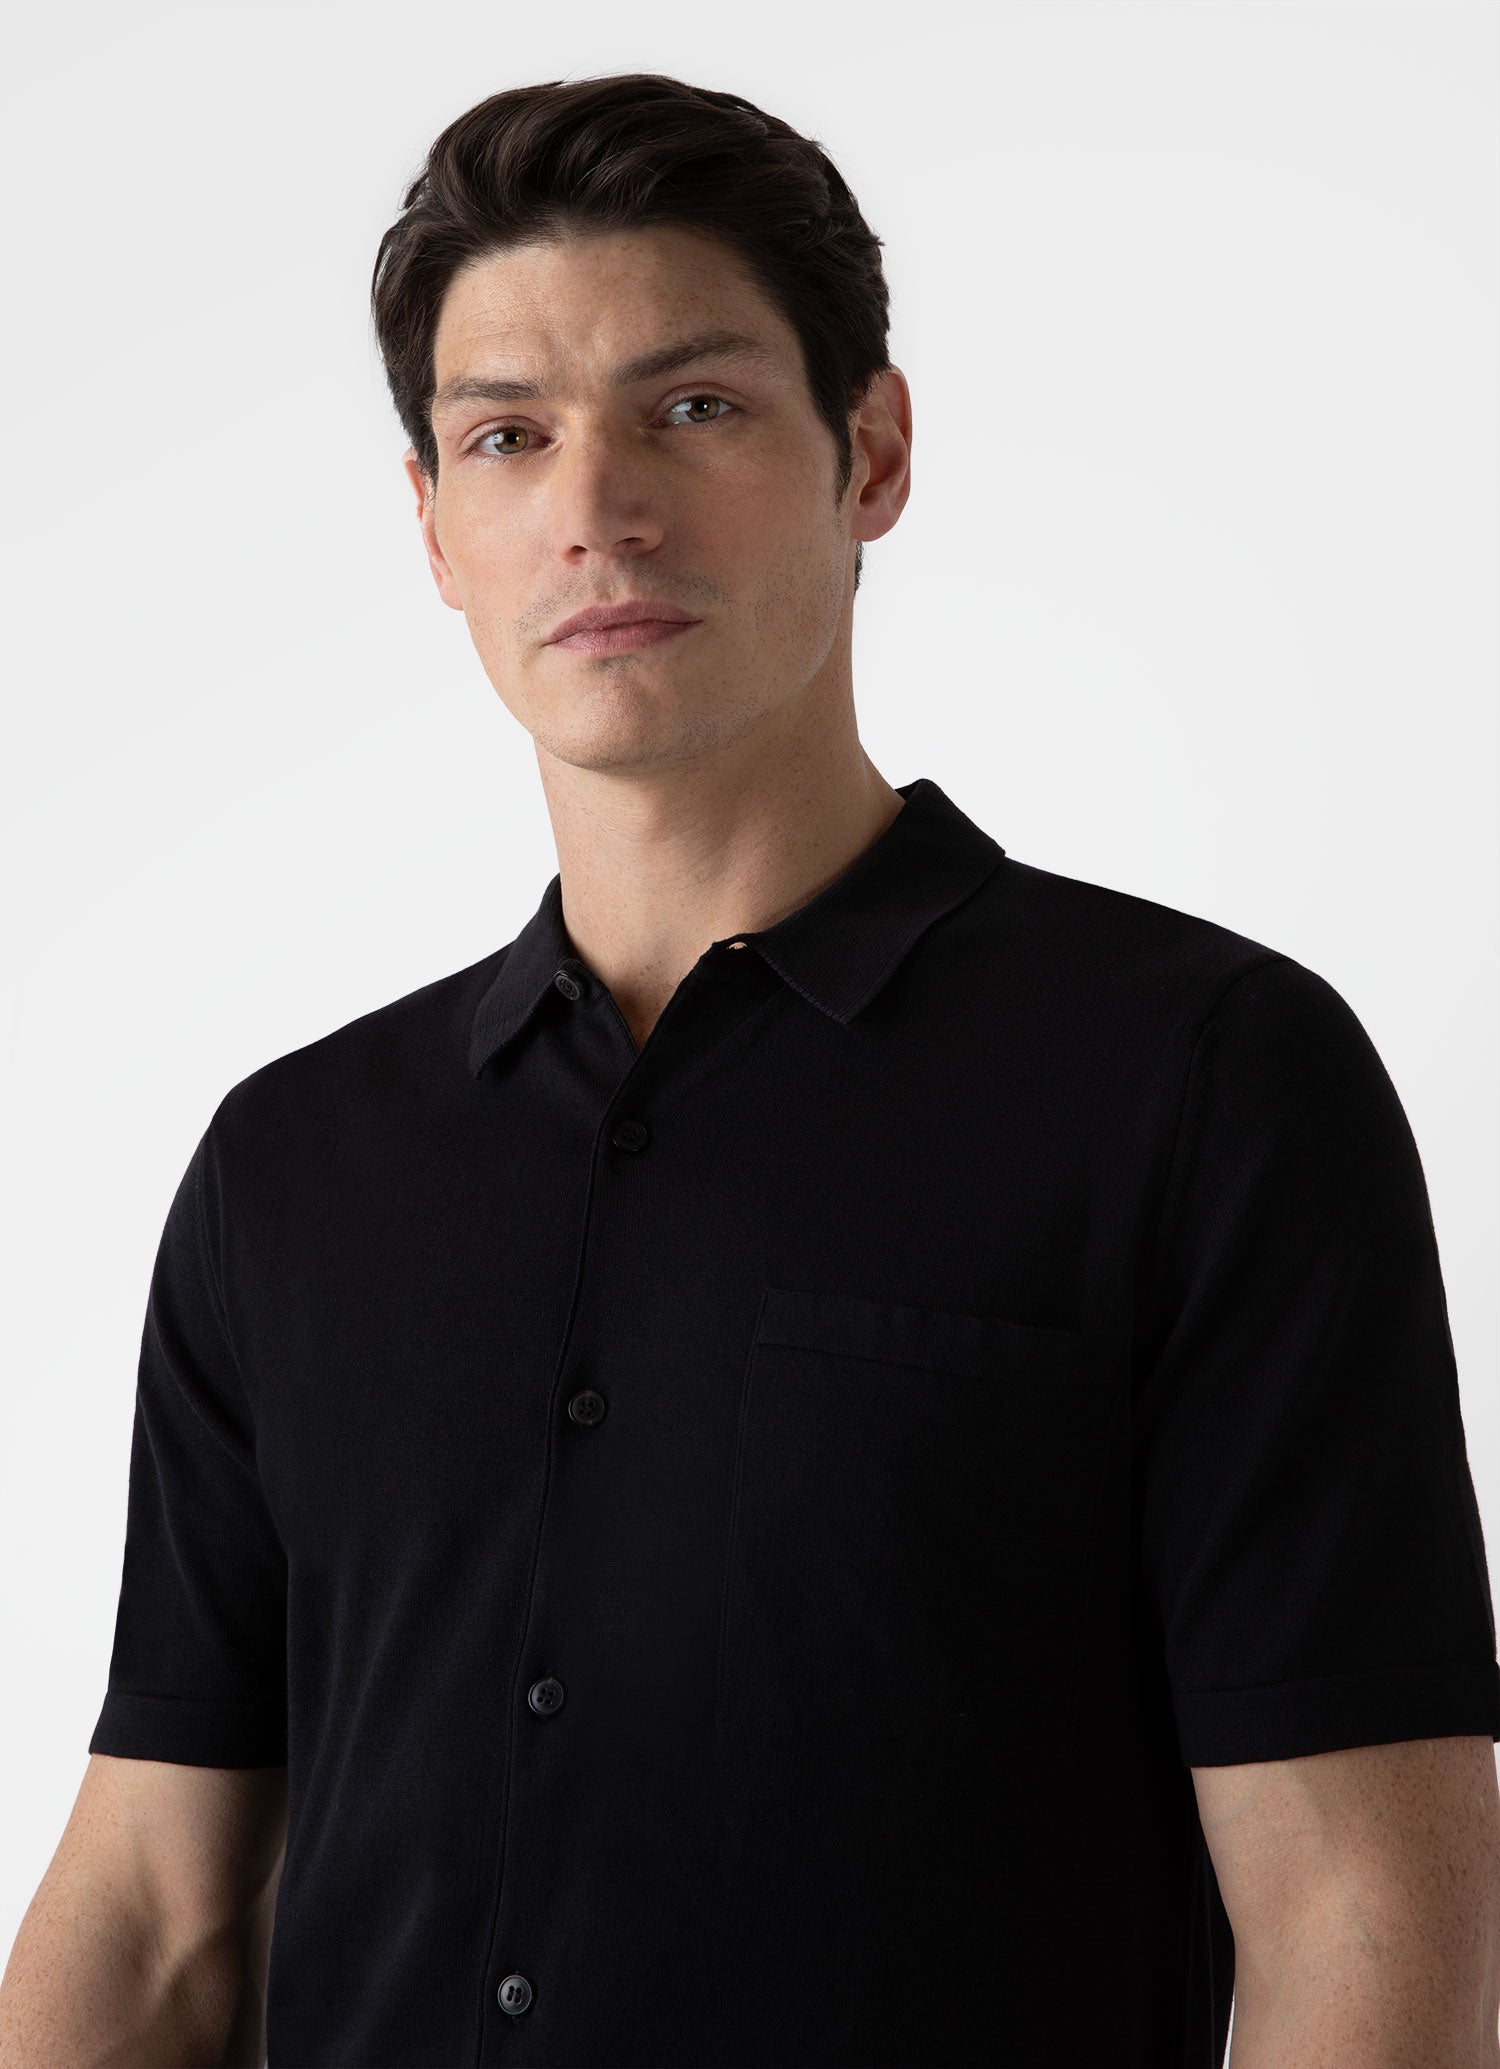 Men's Sea Island Cotton Knit Shirt in Black | Sunspel